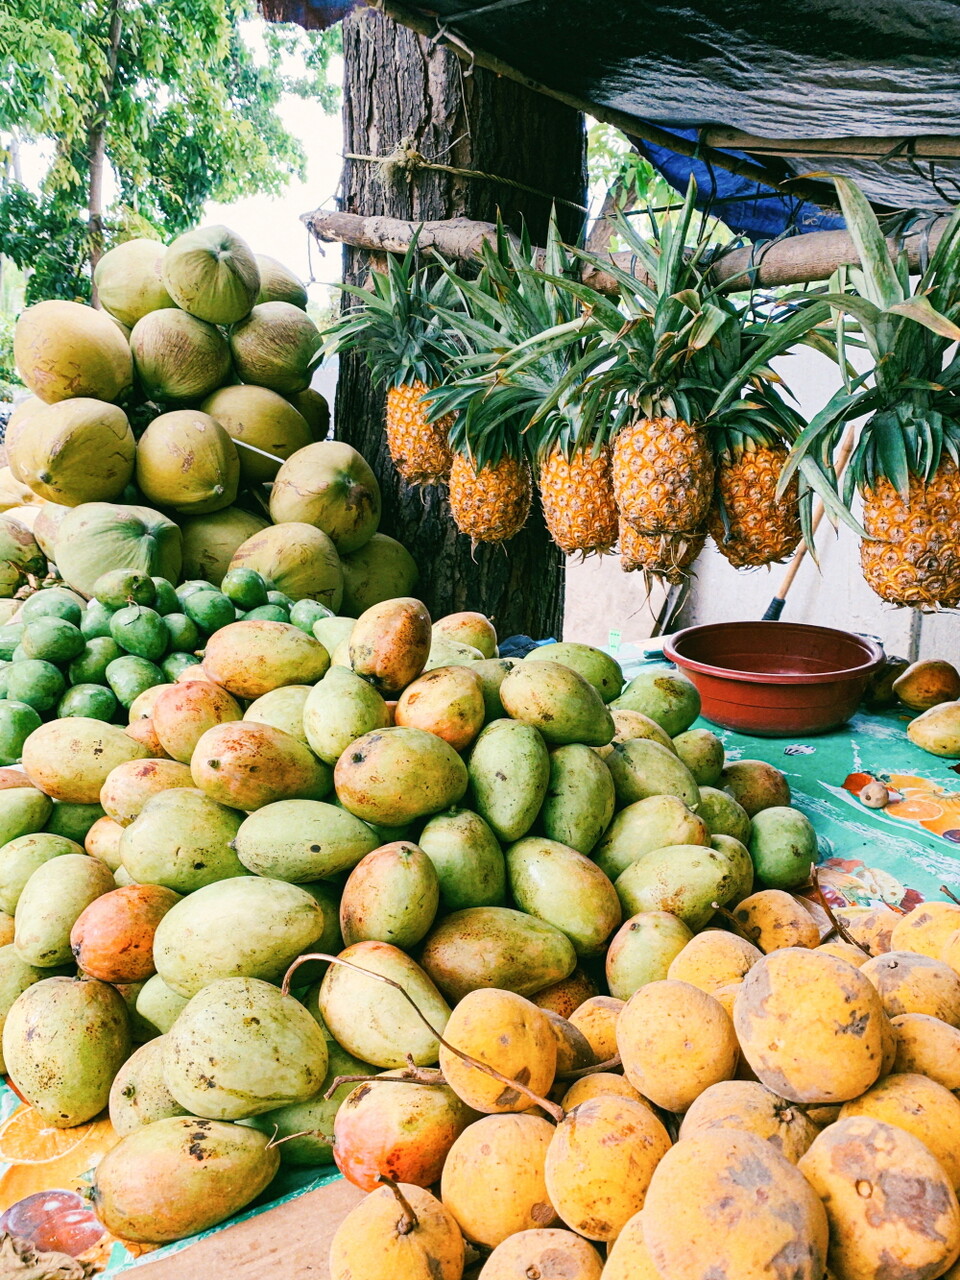 필리핀은 과일의 천국이다. 열대의 뜨거운 햇살을 받아 당도가 무척 높다. 망고, 코코넛, 파인애플 외에도 두리안, 망고스틴, 파파야 등 과일들이 우리나라보다 훨씬 저렴하고 맛도 좋다